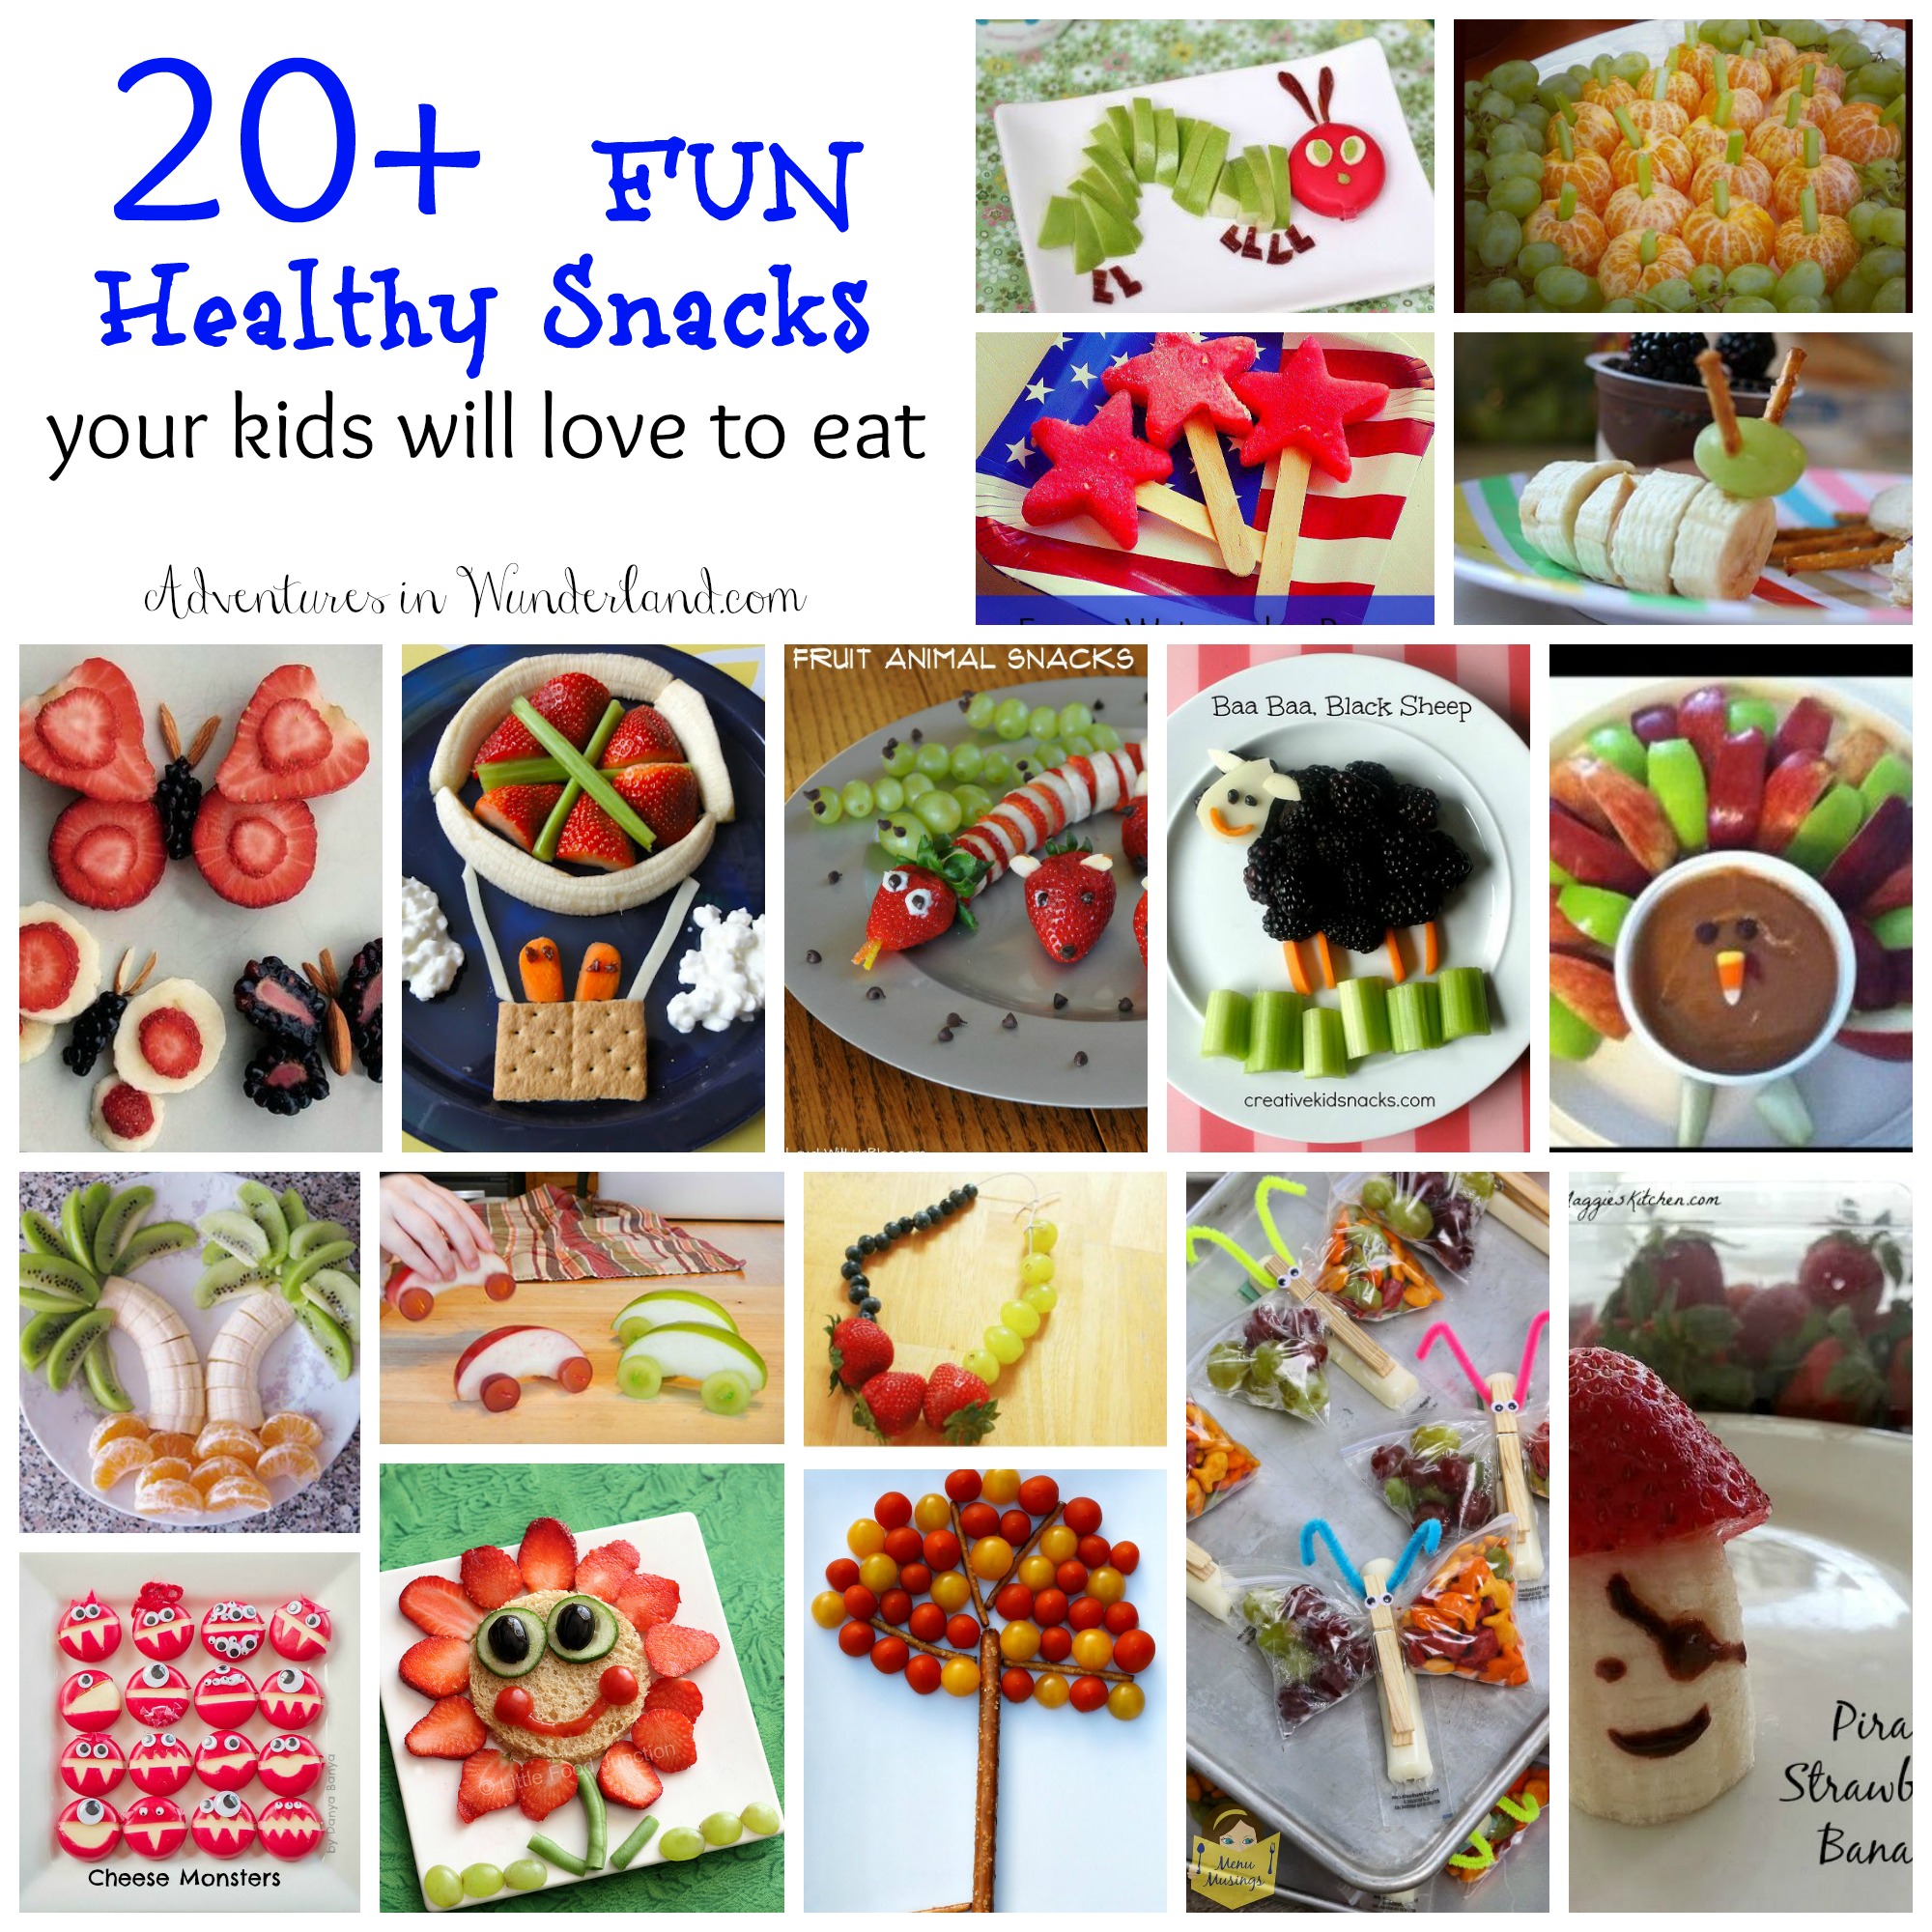 20+ Fun Healthy Snacks